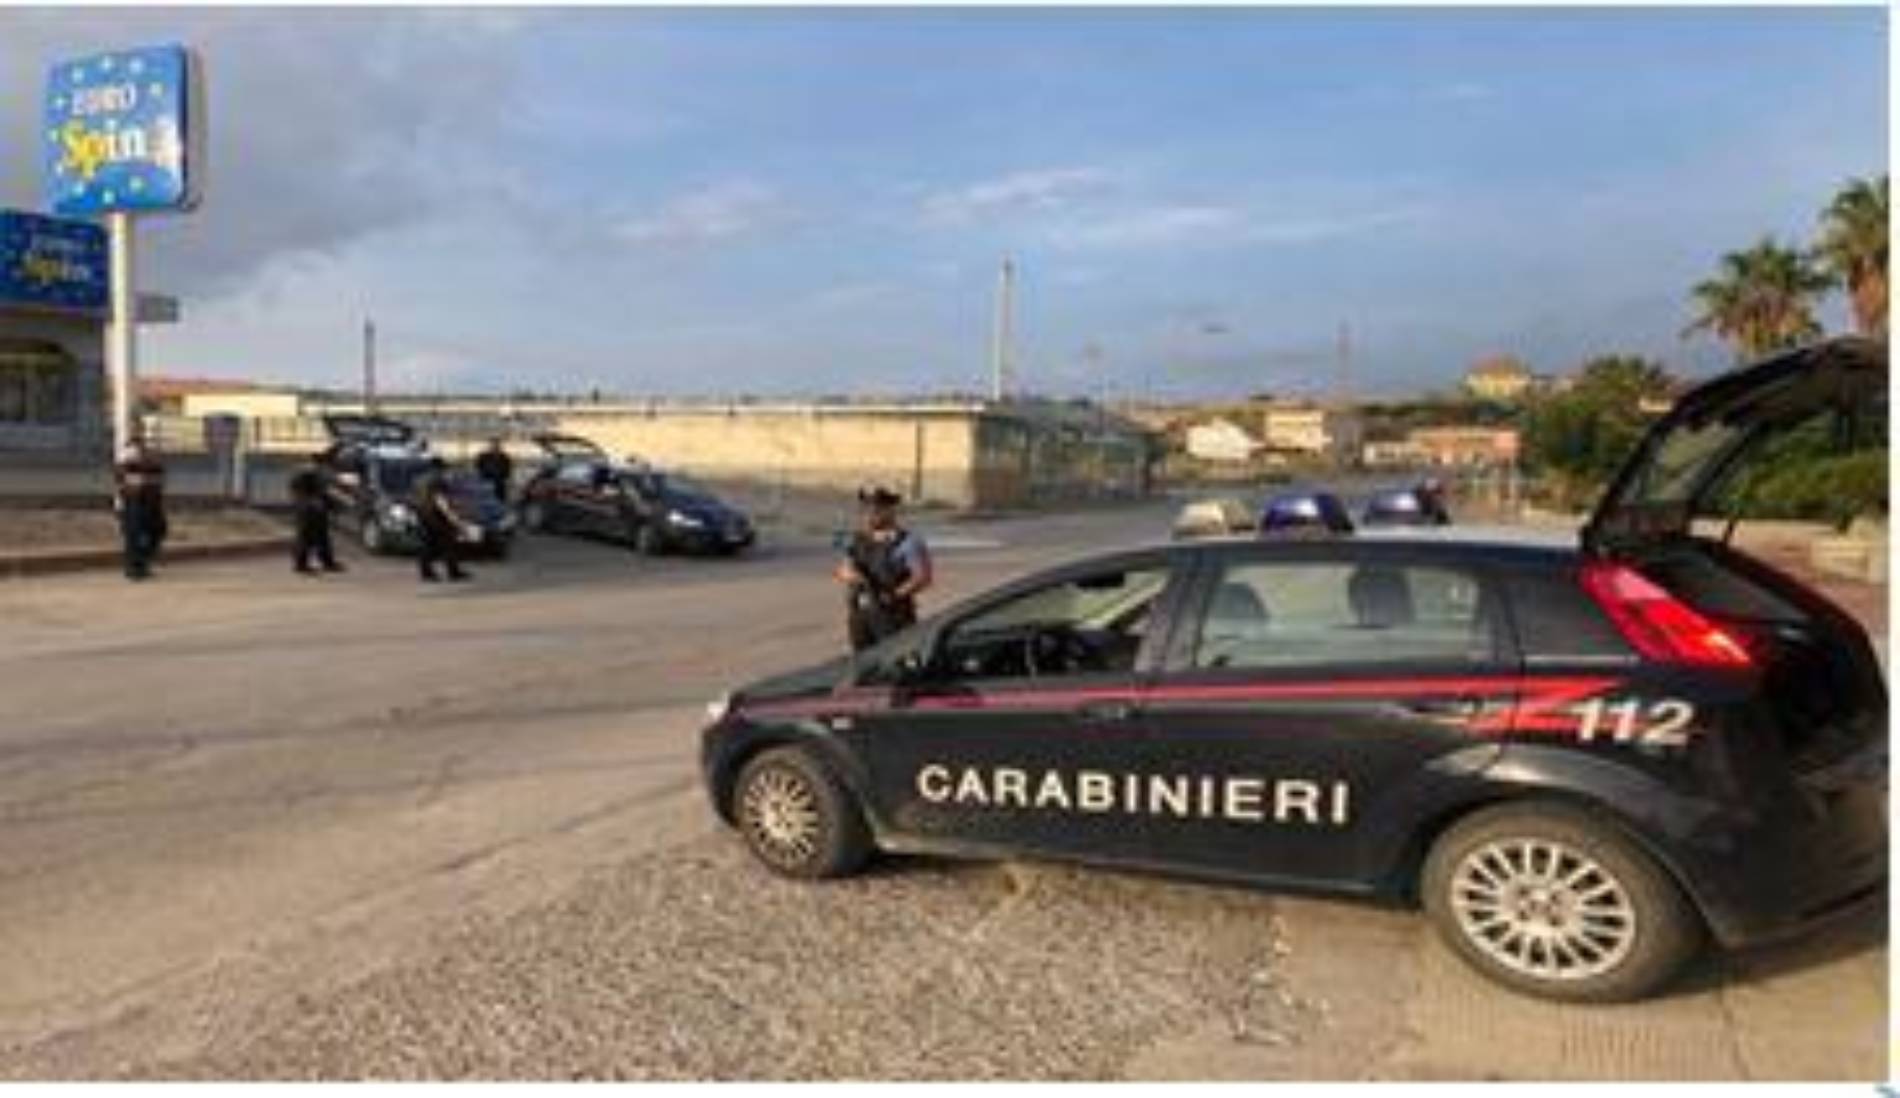 Carabinieri controlli in occasione del carnevale: segnalati ben otto persone per uso personale di sostanze stupefacenti e due denunce per guida senza patente